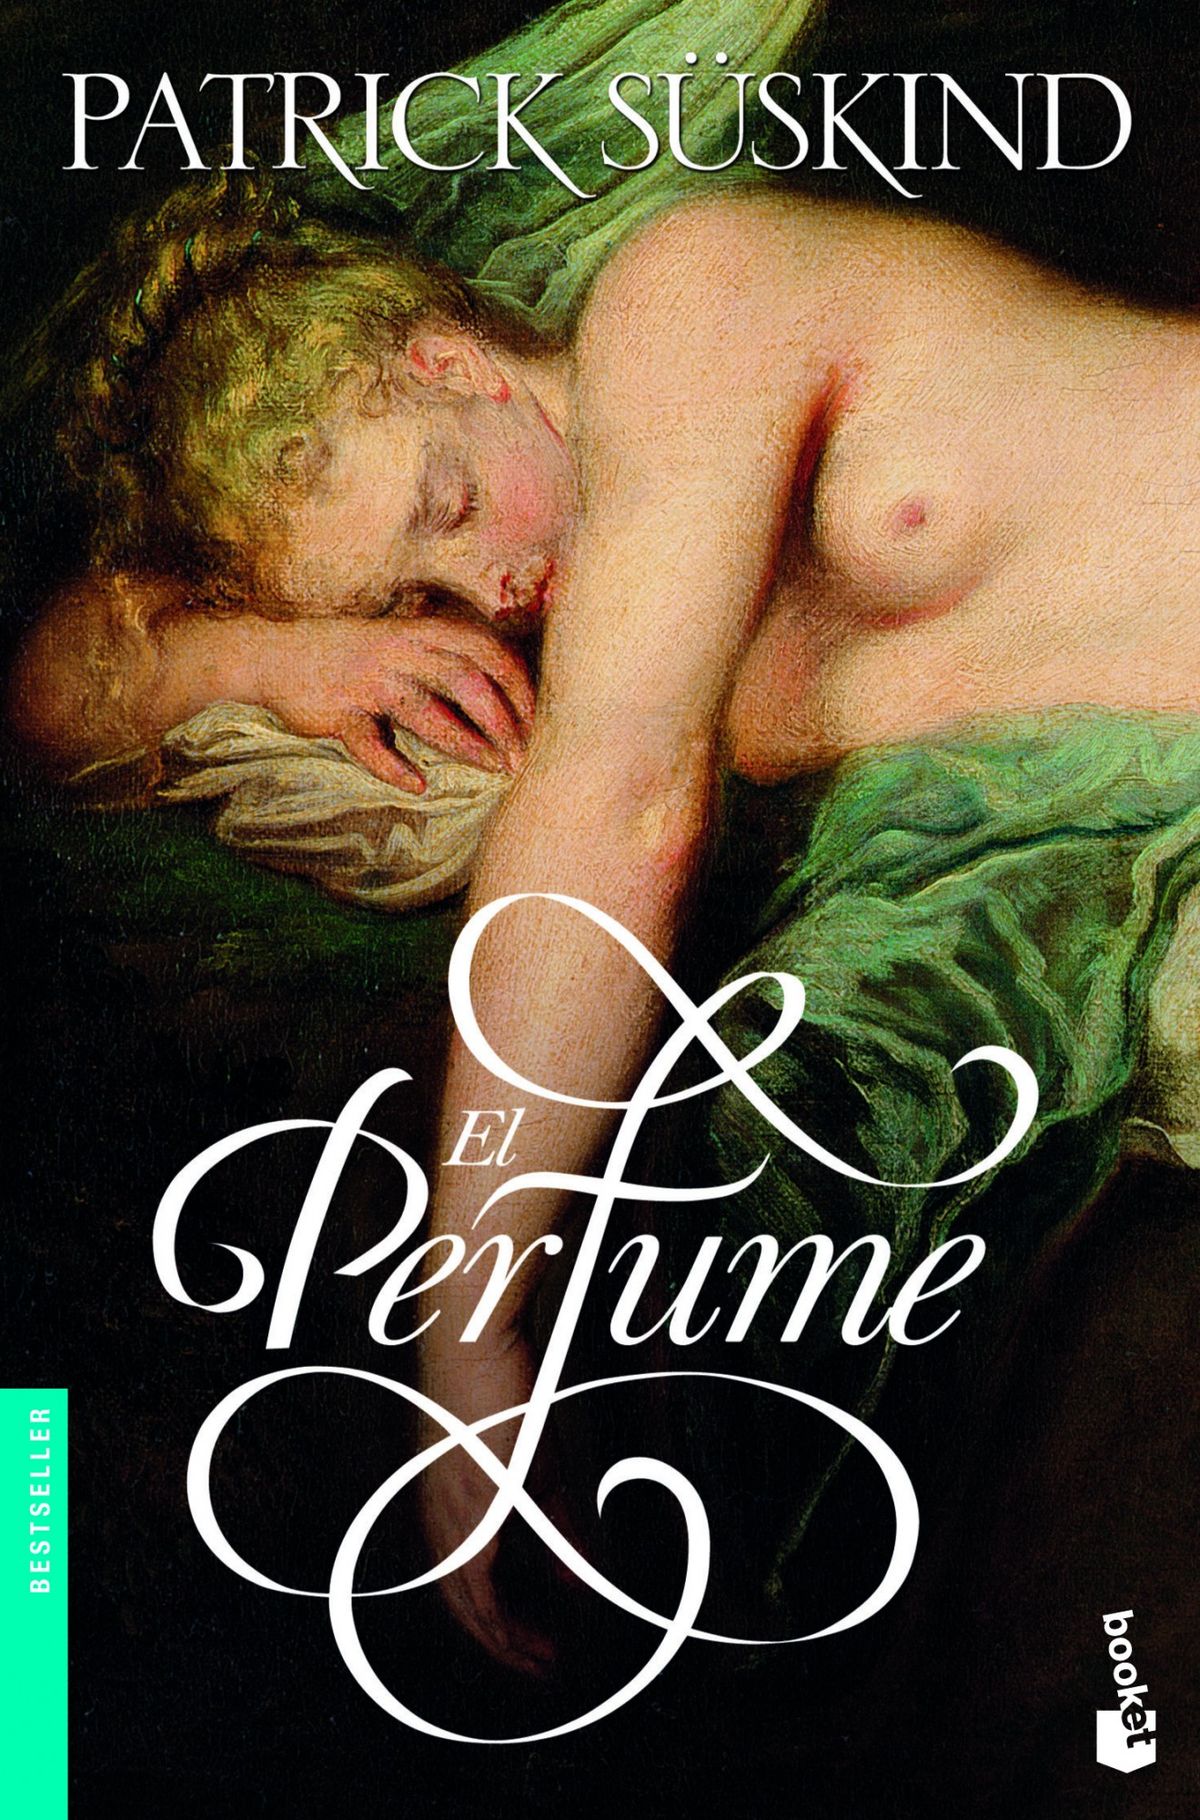 'El perfume' de Patrick Suskind (1985).  (Planeta de libros)